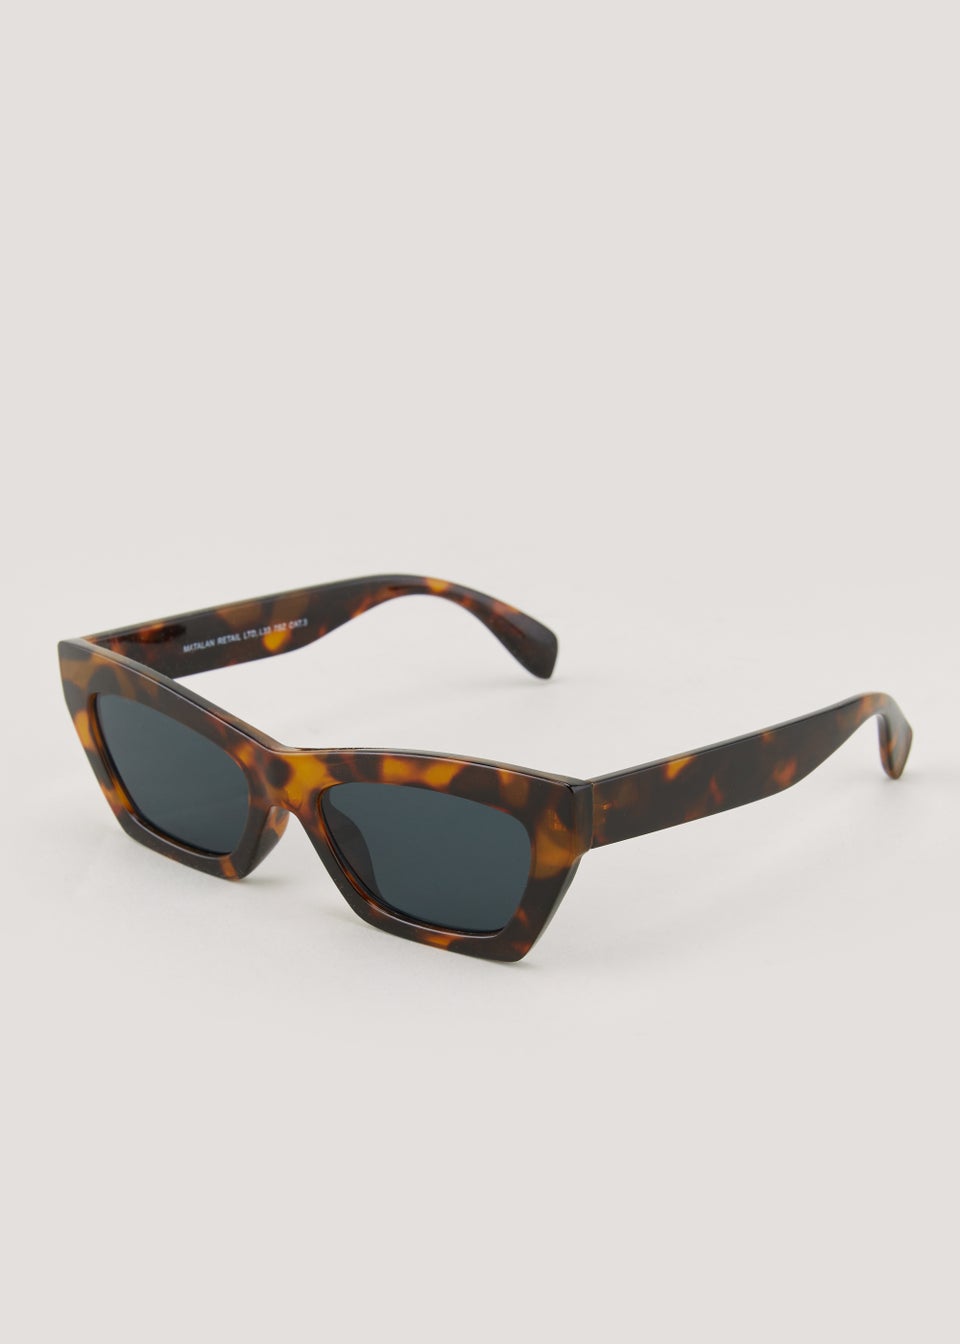 Brown Tortoise Shell Angular Sunglasses